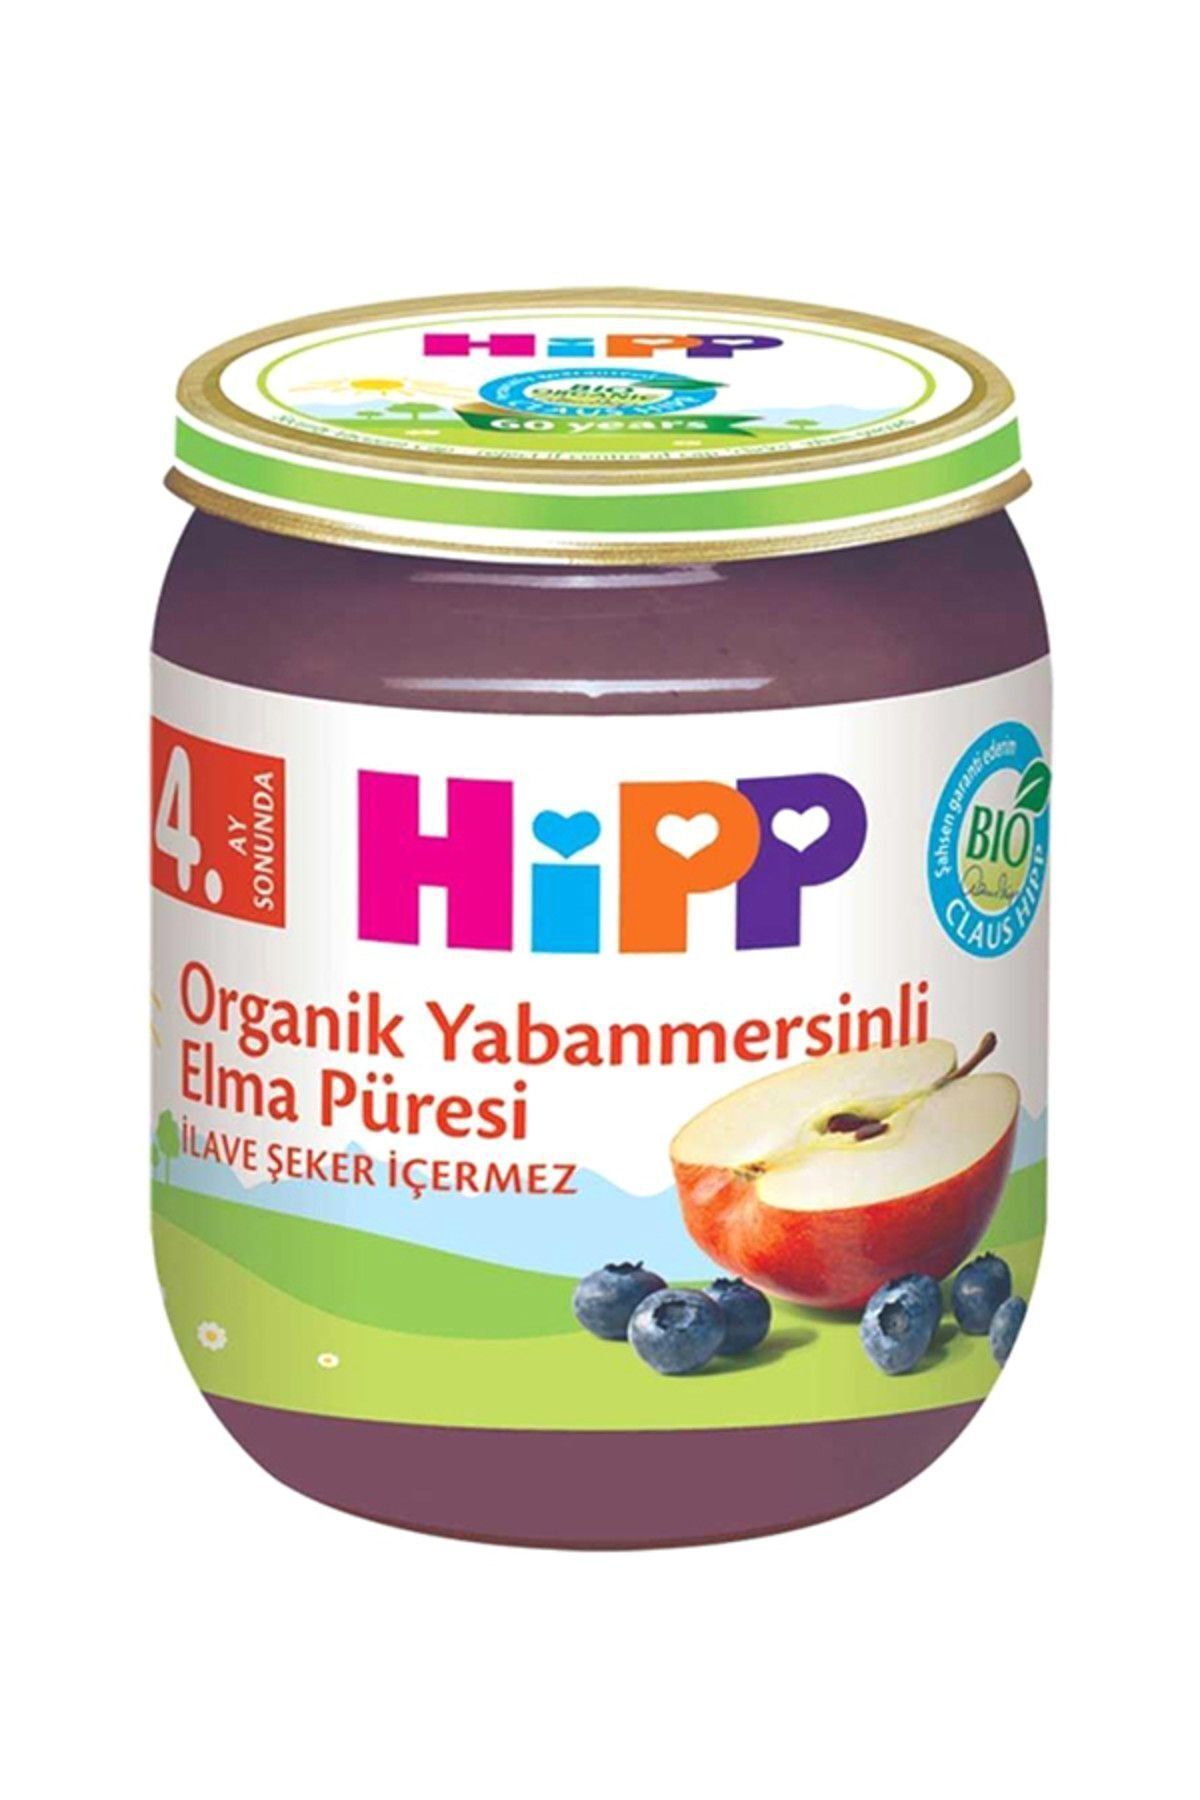 Hipp Organik Yaban mersinli Elma Püresı 125 gr